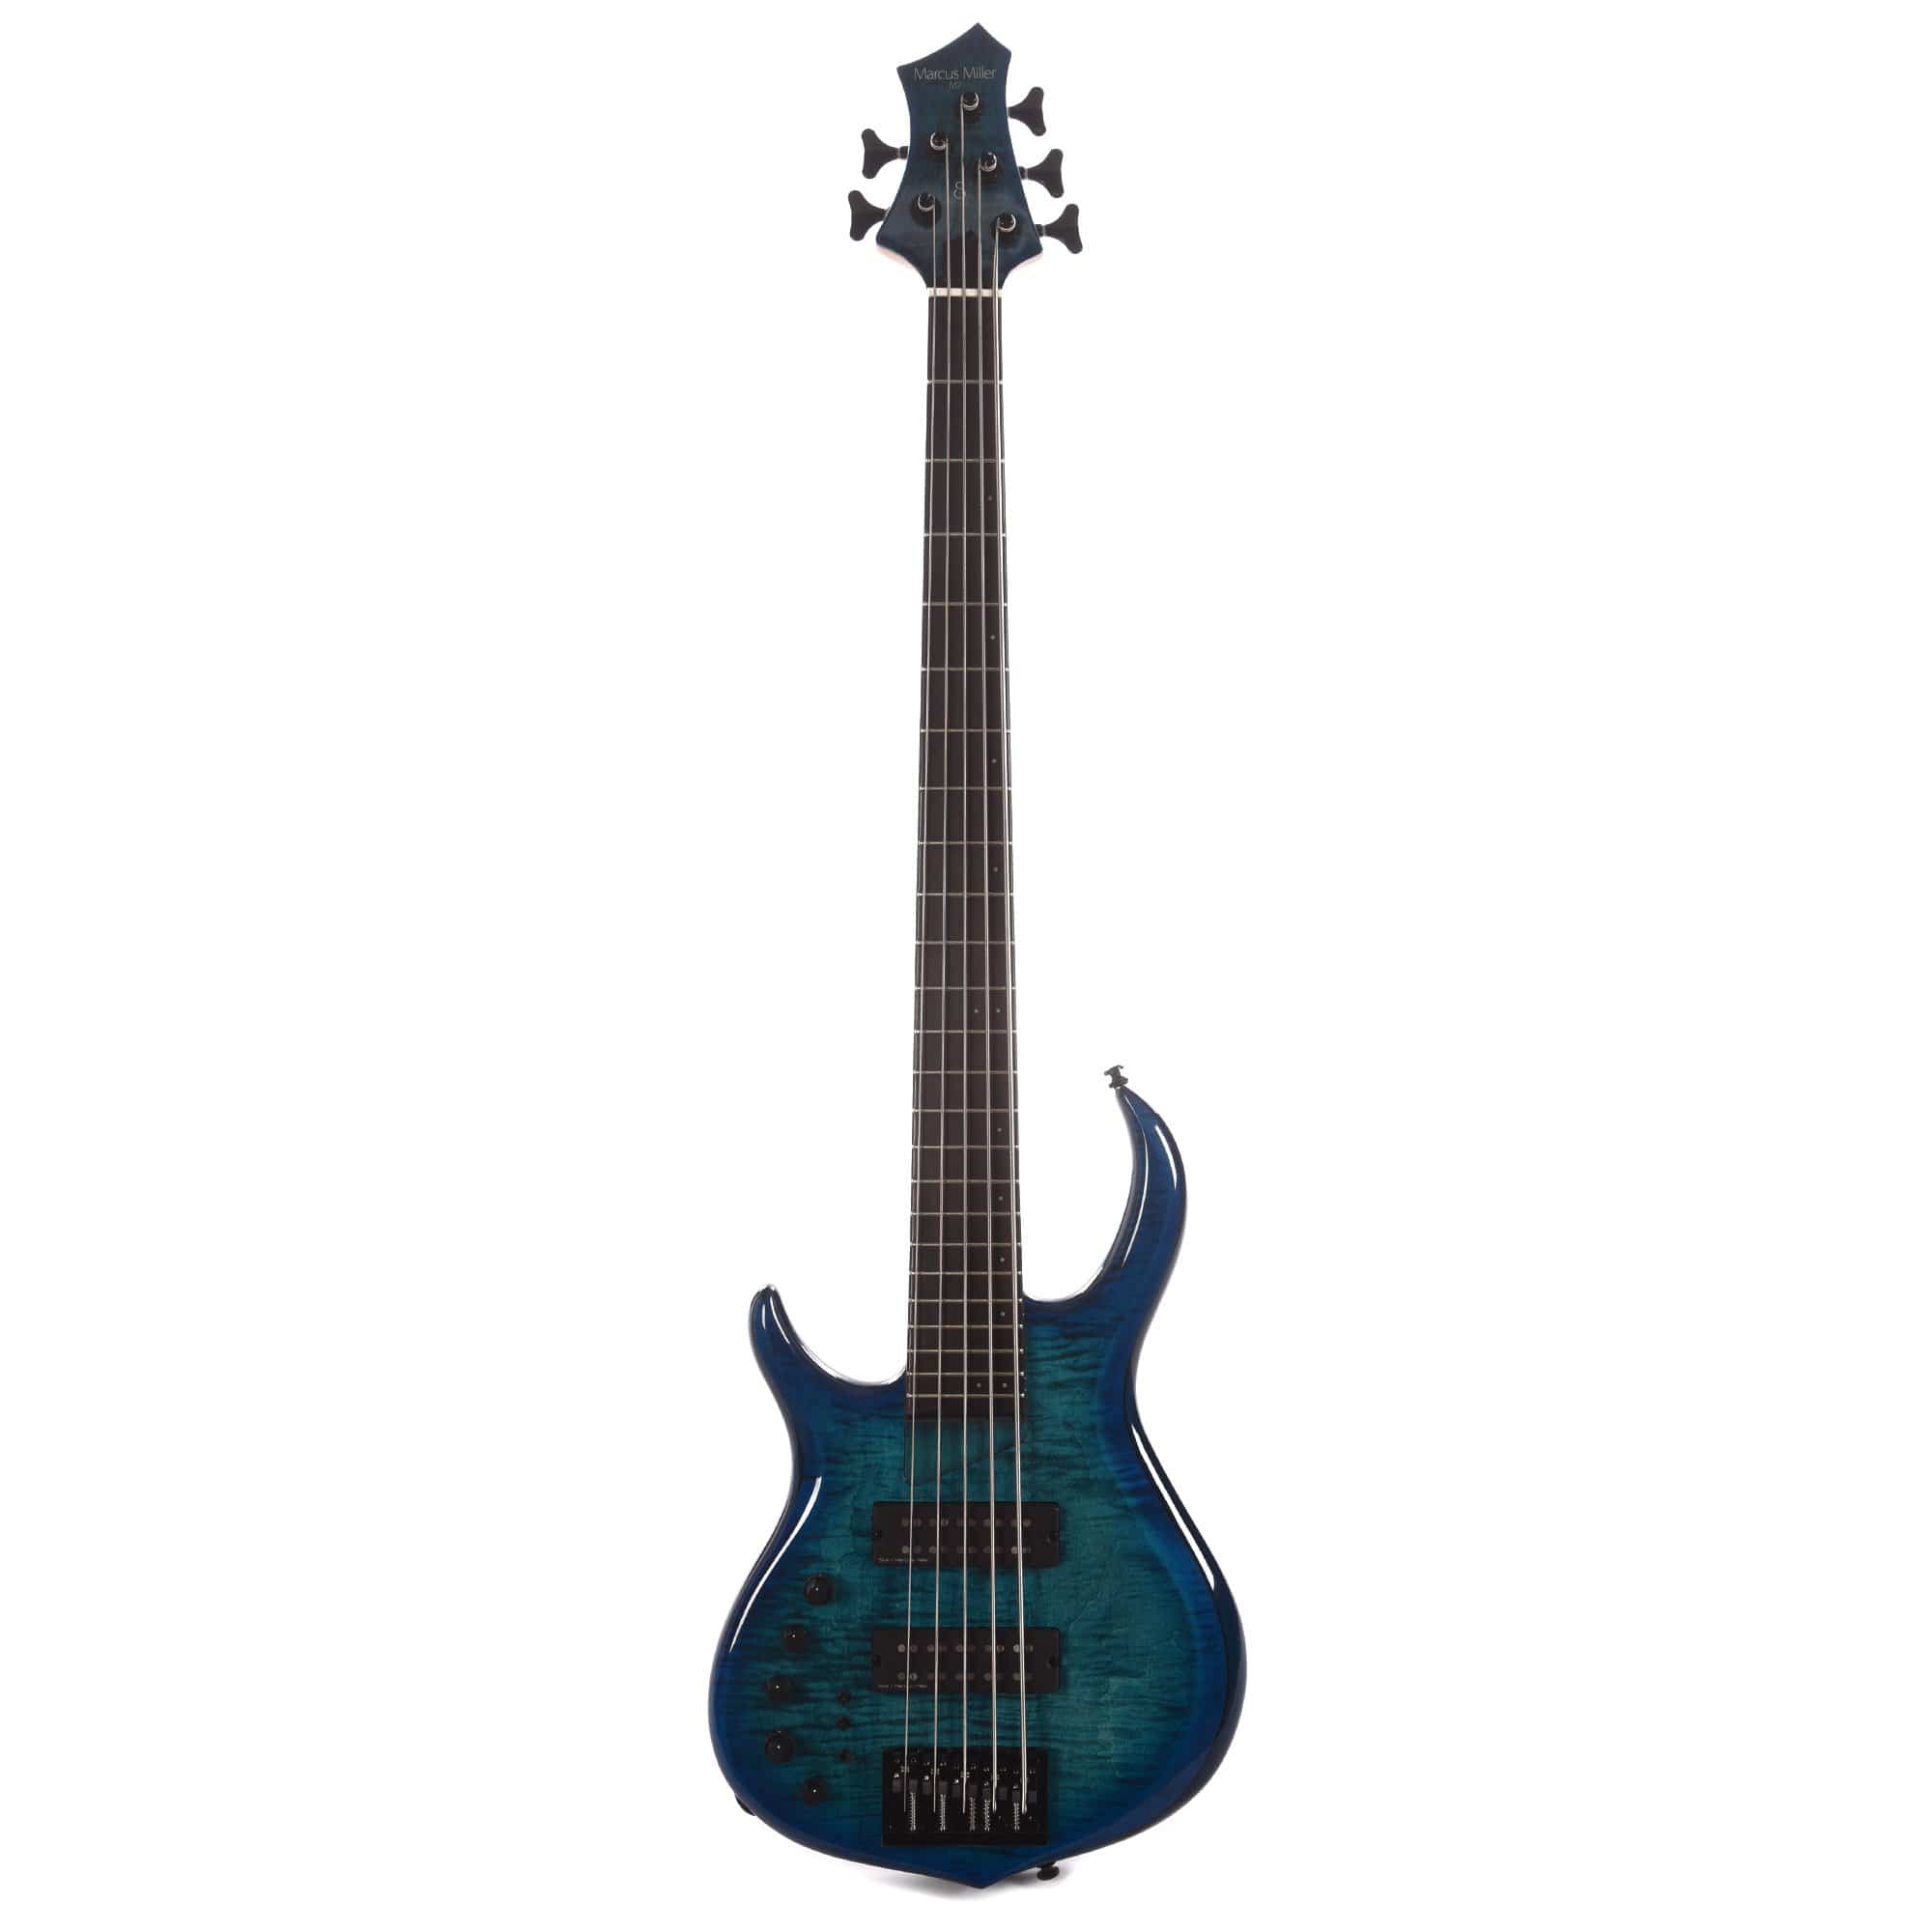 Sire Marcus Miller M7 Alder/Maple 5-String LEFTY Transparent Blue (2nd Gen) Bass Guitars / Left-Handed